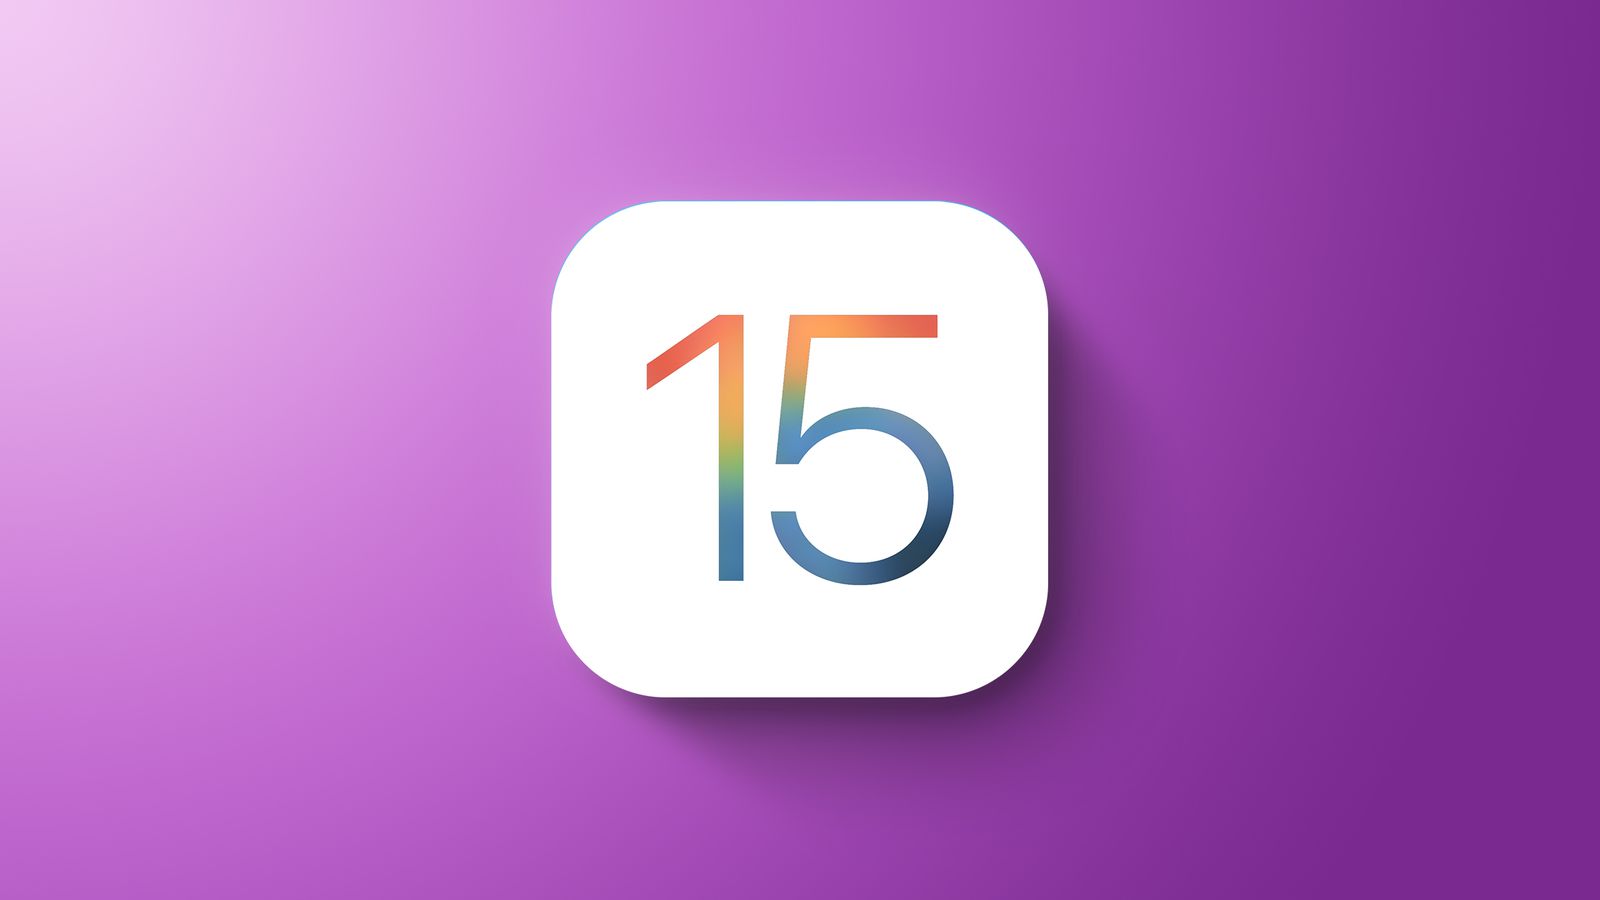 iOS 15.4 apple iOS 15.3